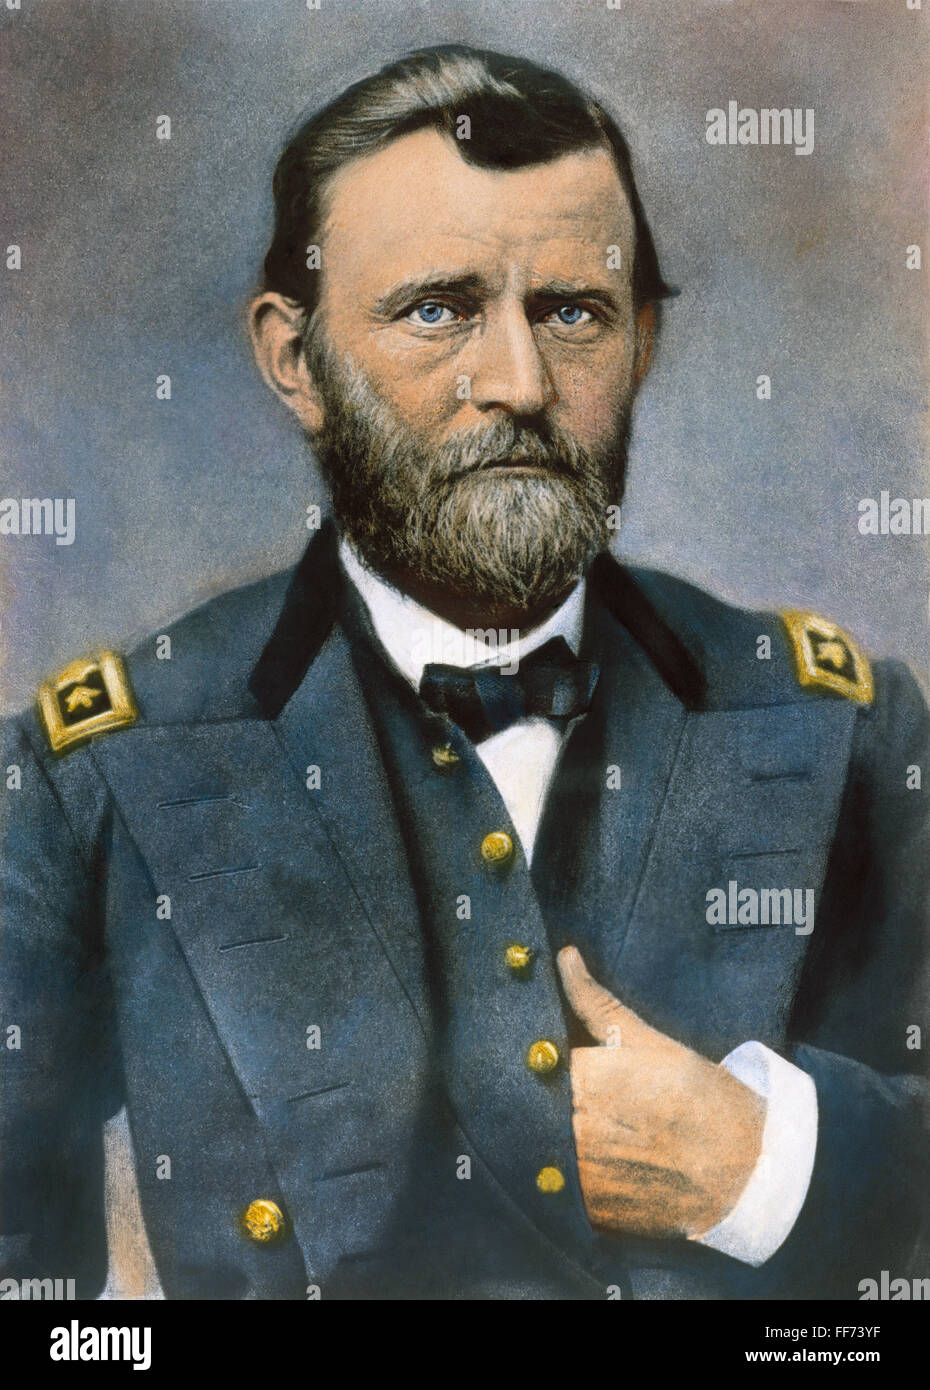 ULYSSES S. GRANT (1822-1885). /n18th Präsident der Vereinigten Staaten. Fotografiert von Mathew Brady in 1864 oder 1865, in der Uniform eines Generalleutnants. Stockfoto